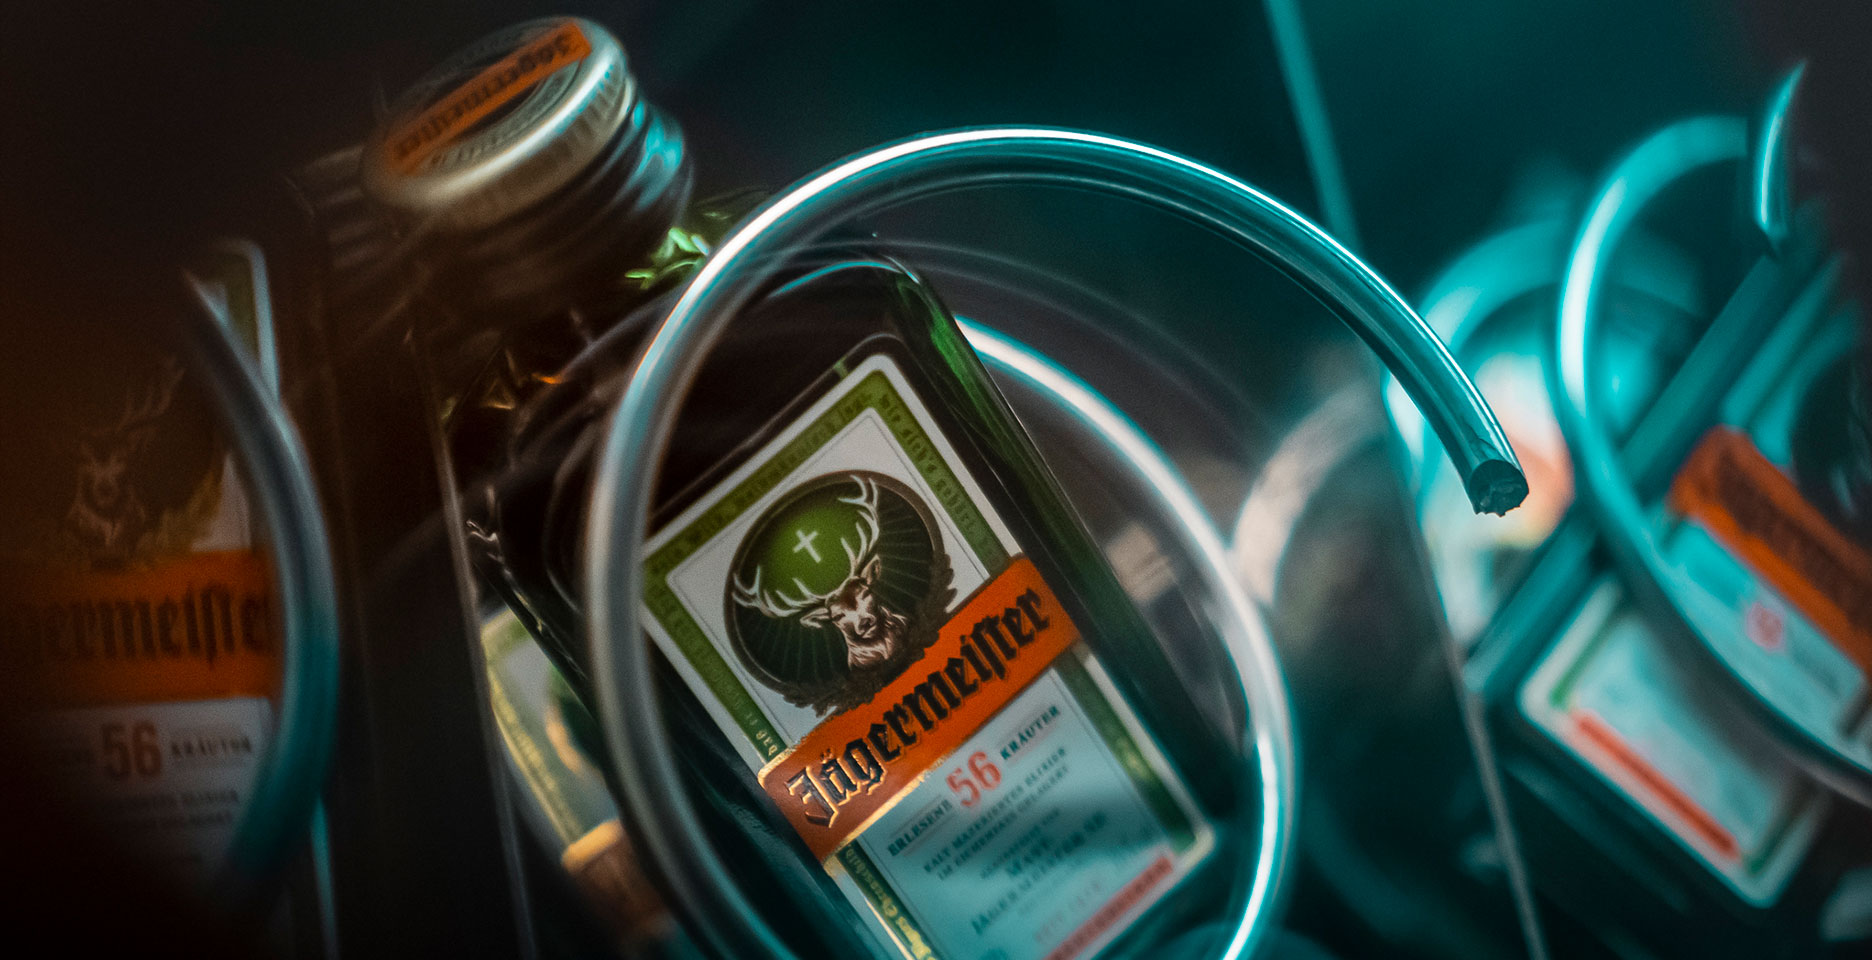 Jägermeister 0,02l Flasche im Automat